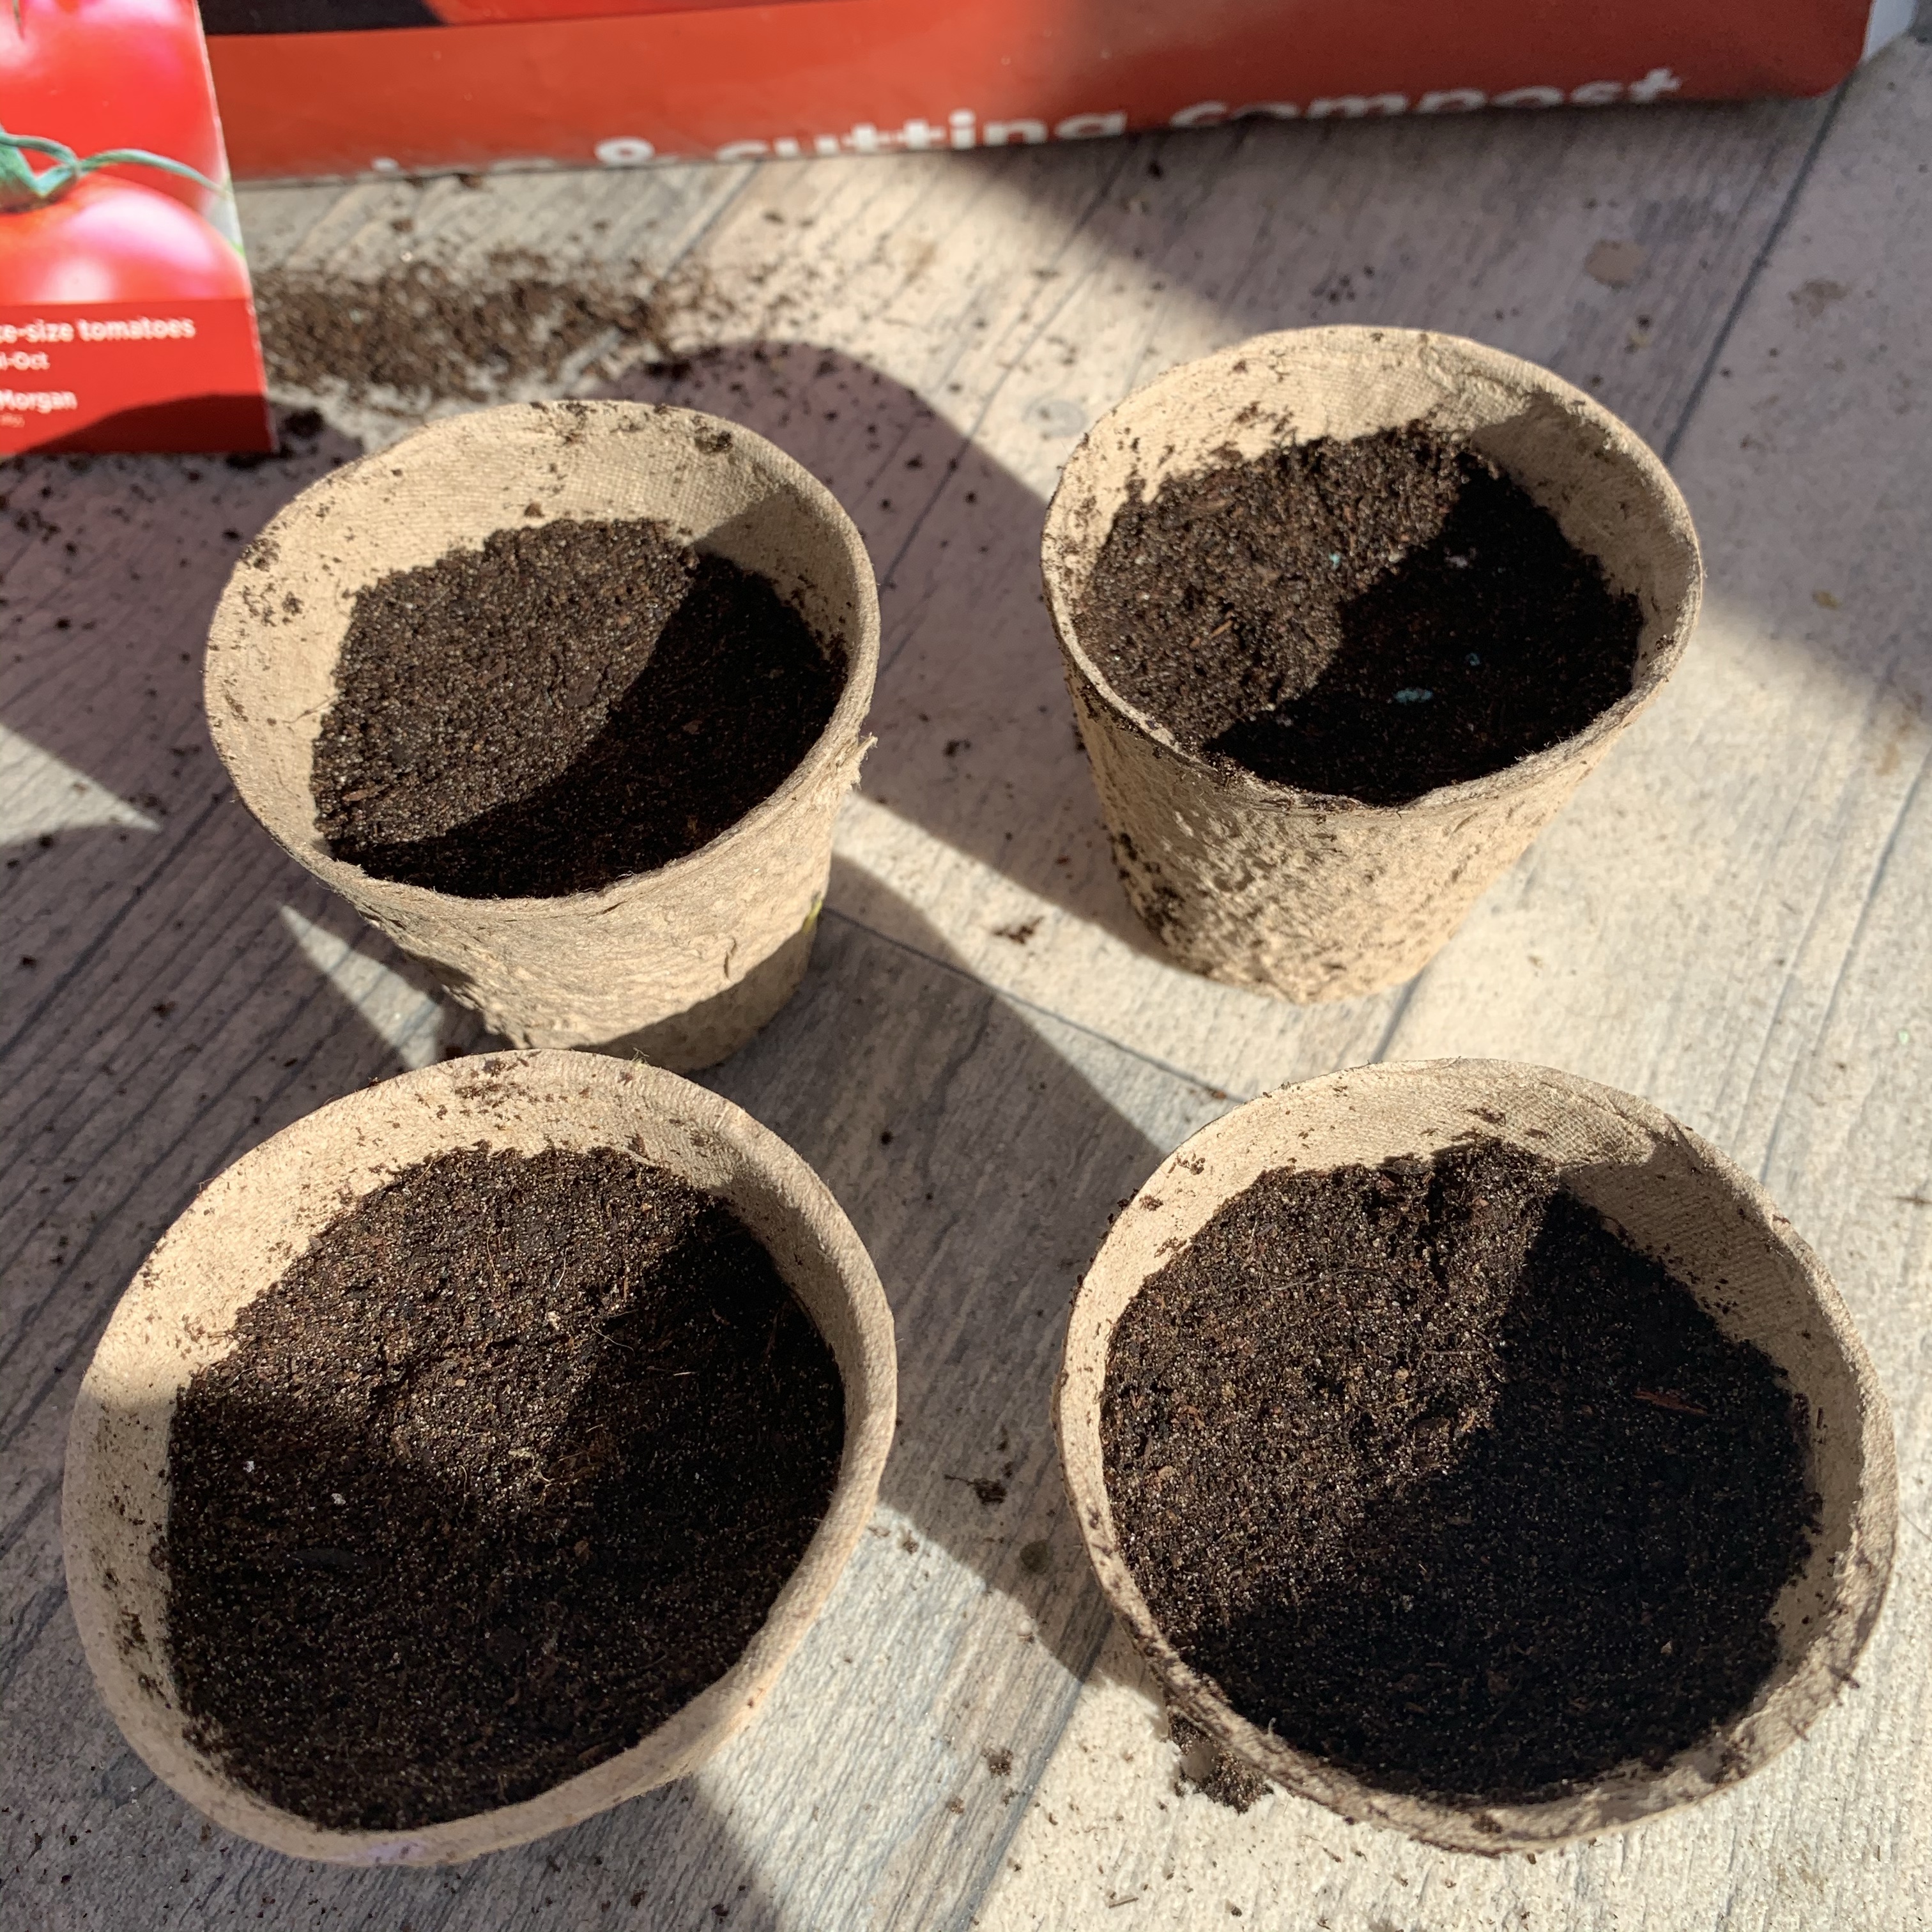 Fibre pots with compost